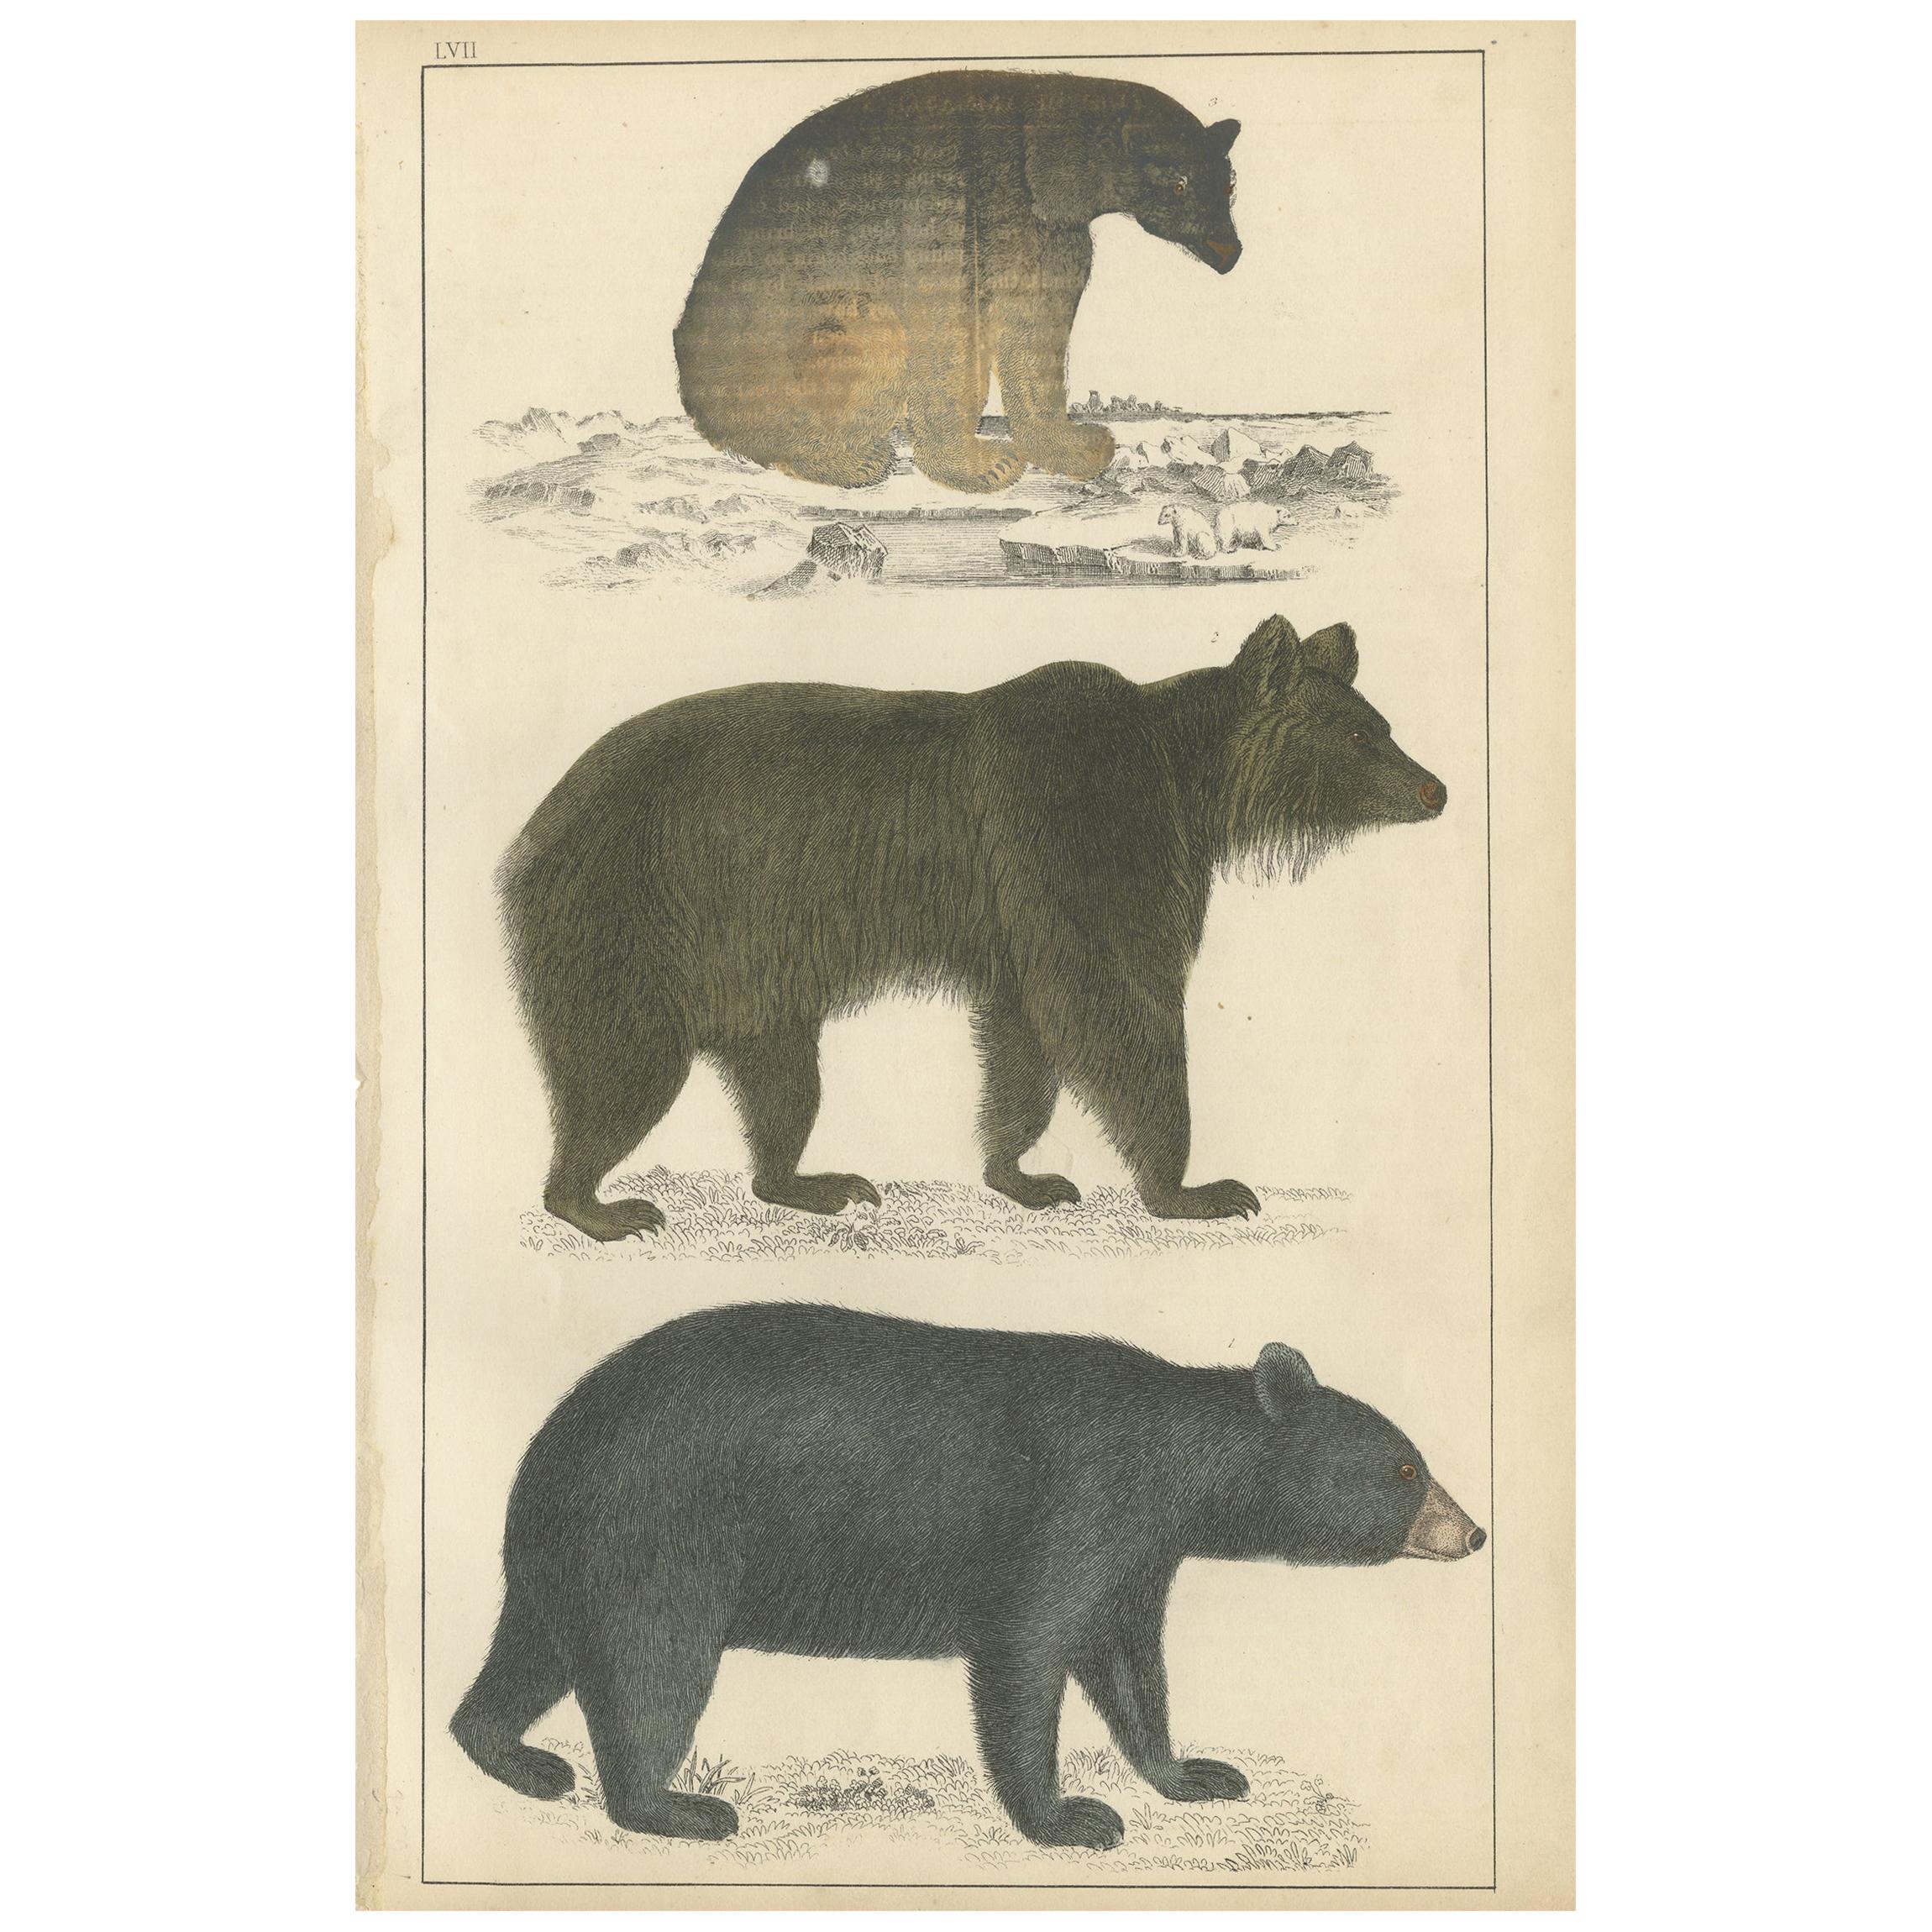 Impression ancienne d'un ours noir, d'un ours brun et d'un ours polaire, datant d'environ 1850